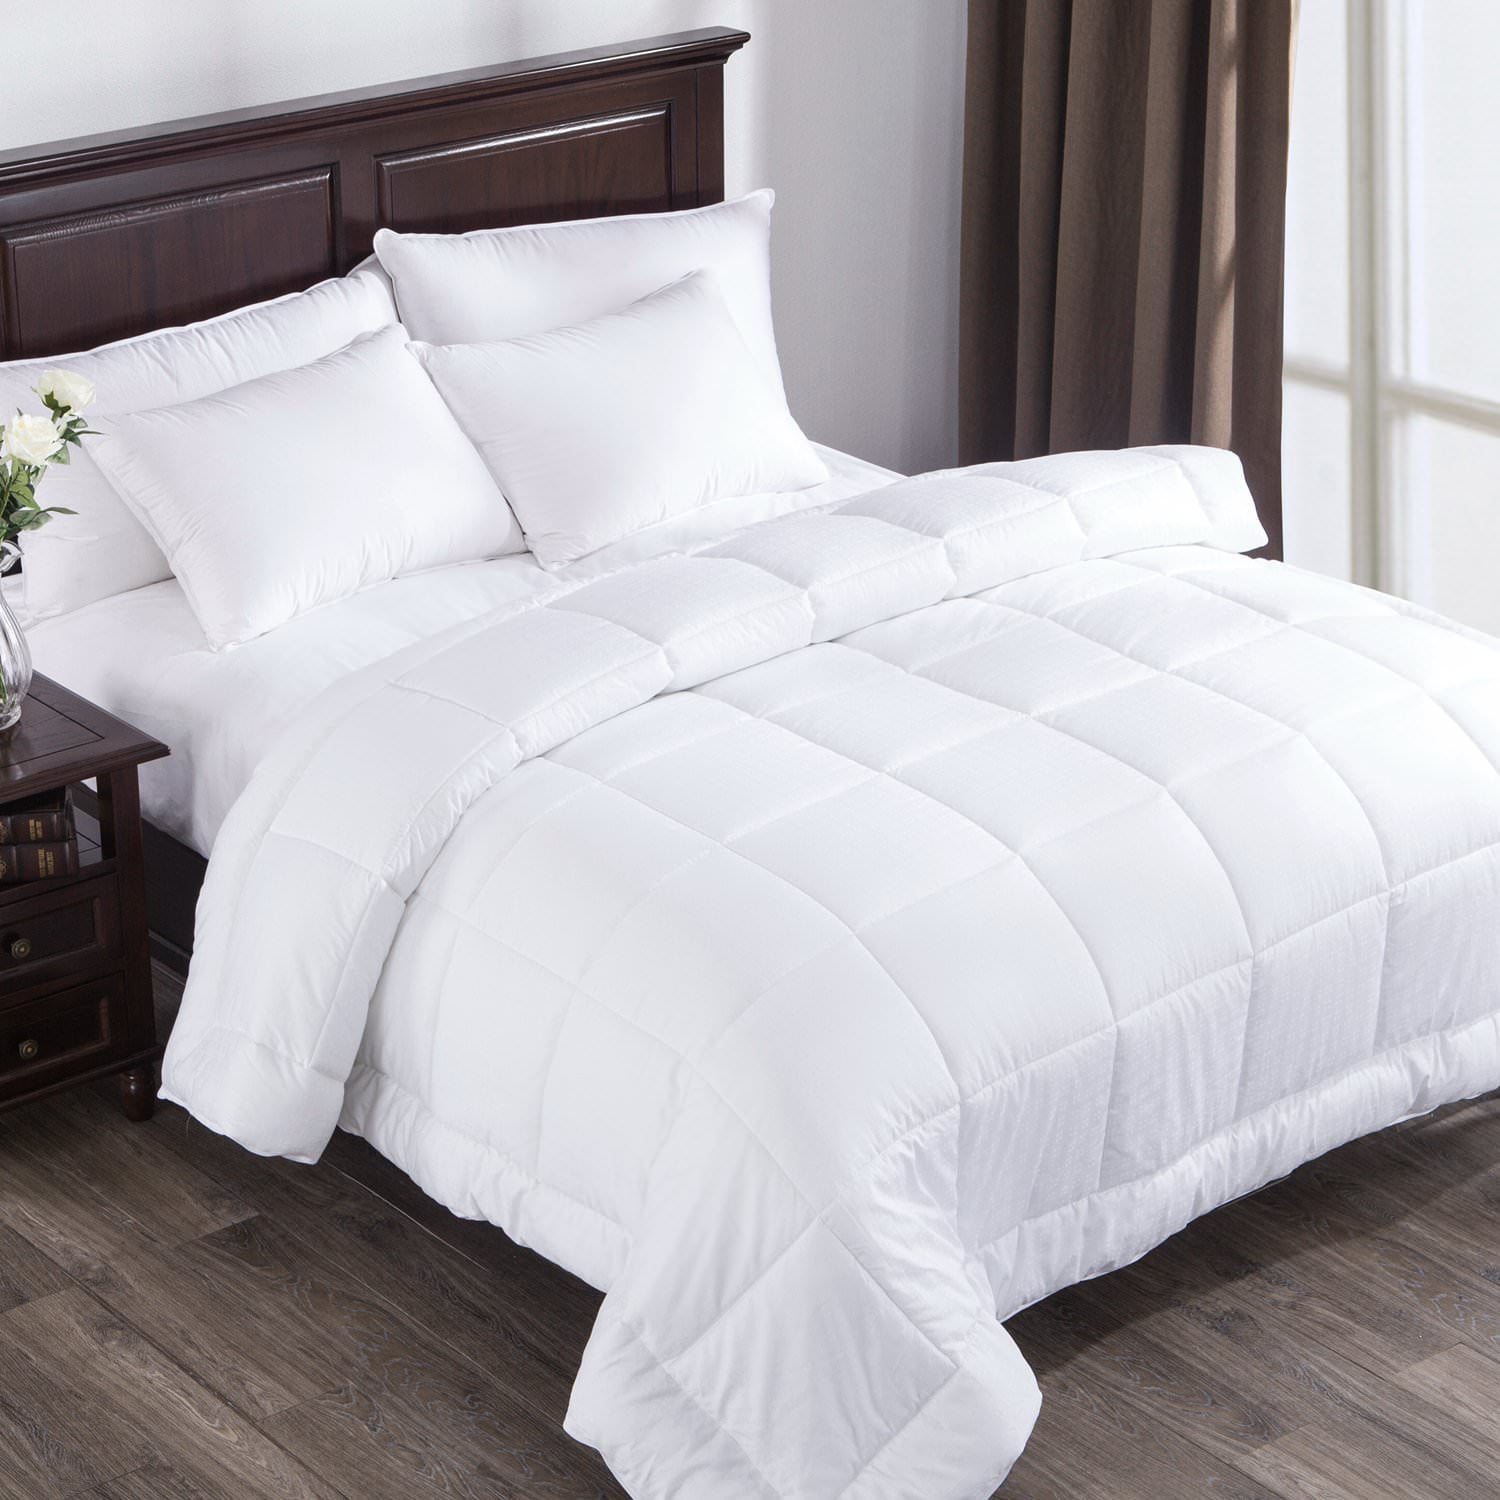 Puredown Alternative Comforter White Duvet Insert Cotton Shell 300TC King Cal 